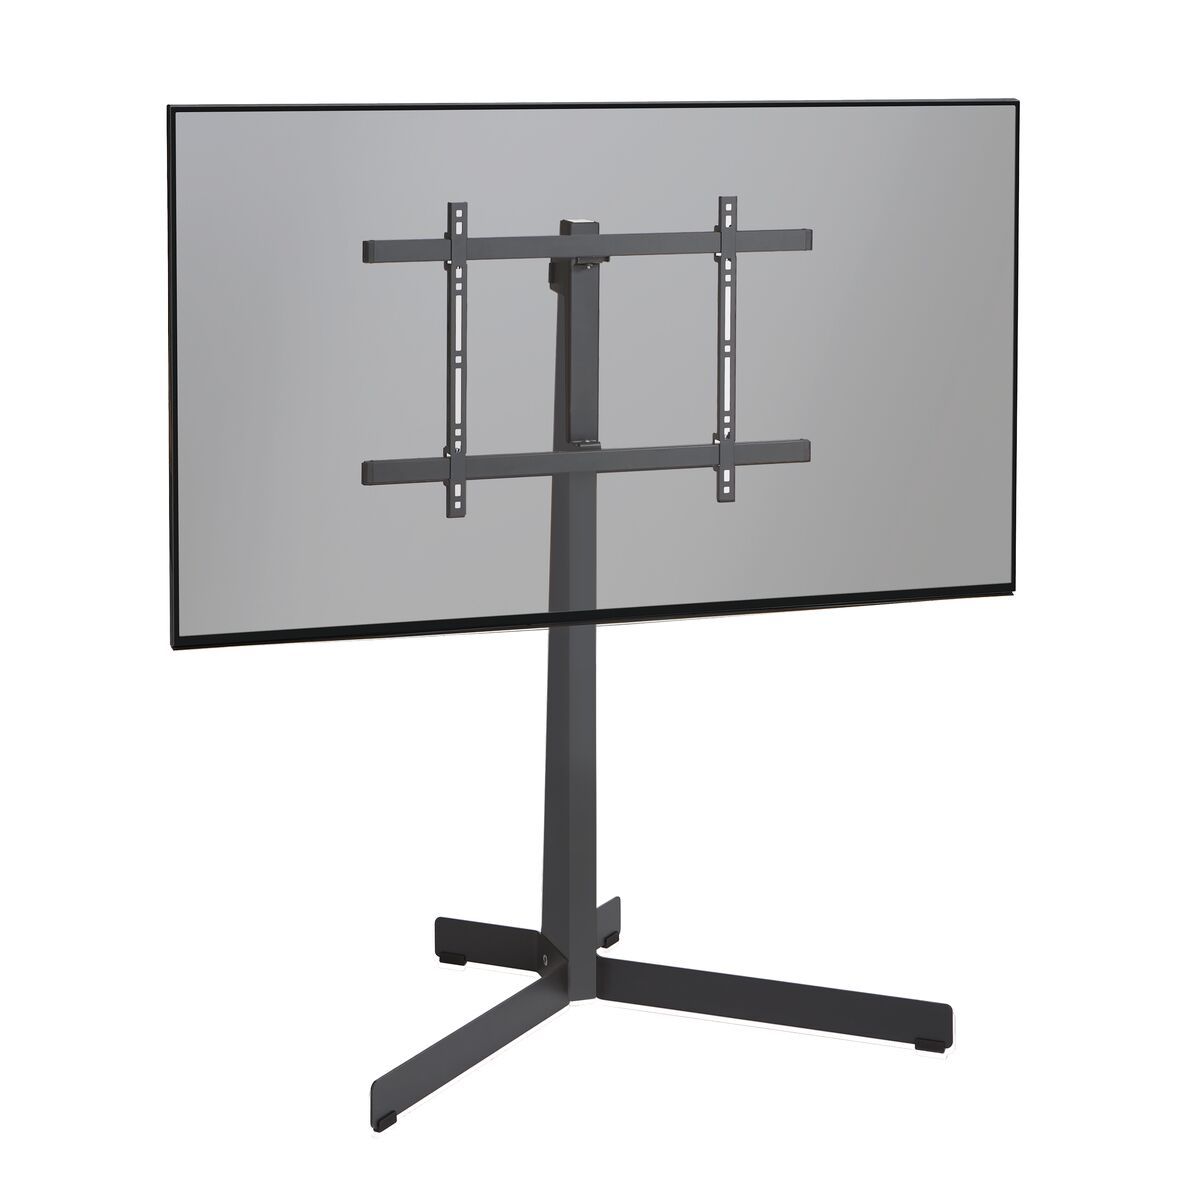 Vogel's TVS 3690 TV-Ständer (schwarz) - Geeignet für Fernseher von 40 bis 77 Zoll und einem Gewicht bis zu 50 kg - Application